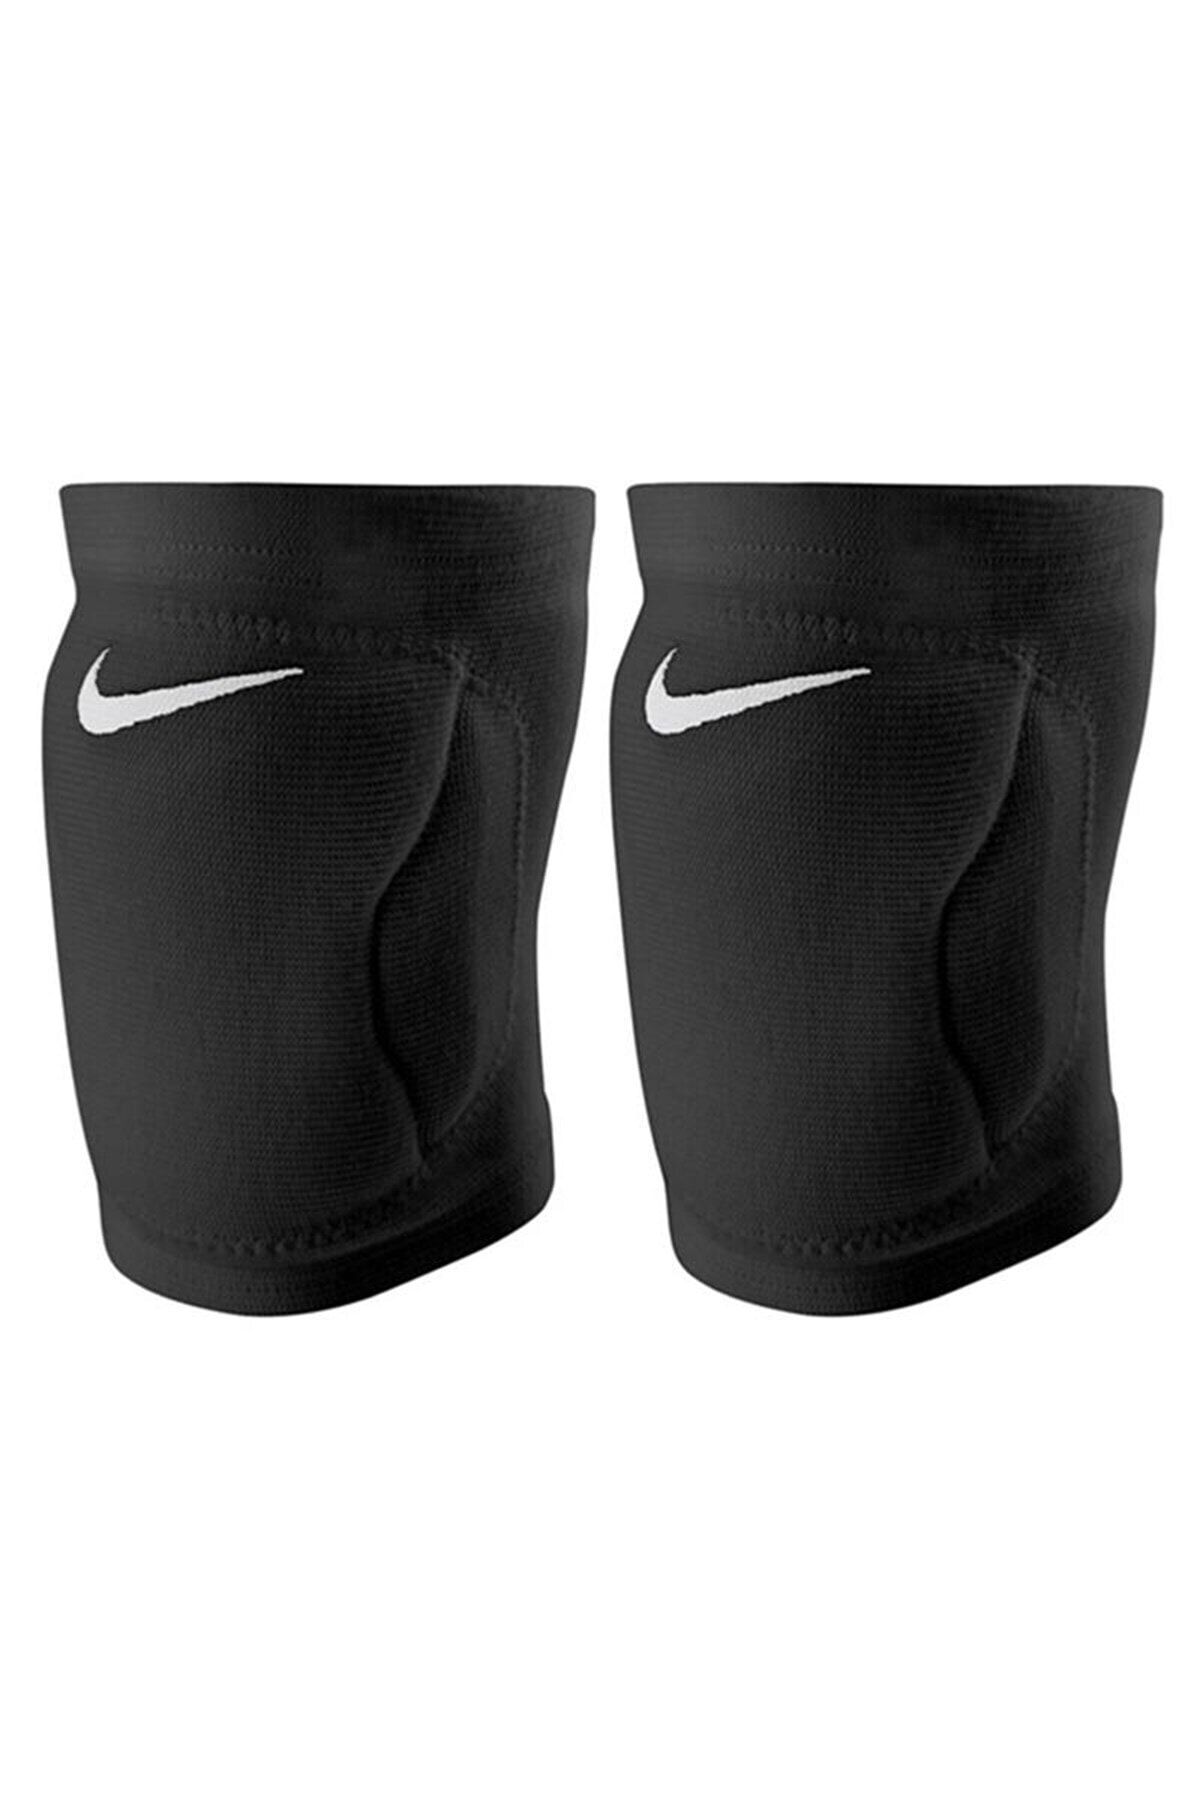 Nike Streak Knee Pad Voleybol Dizliği Nvp07001